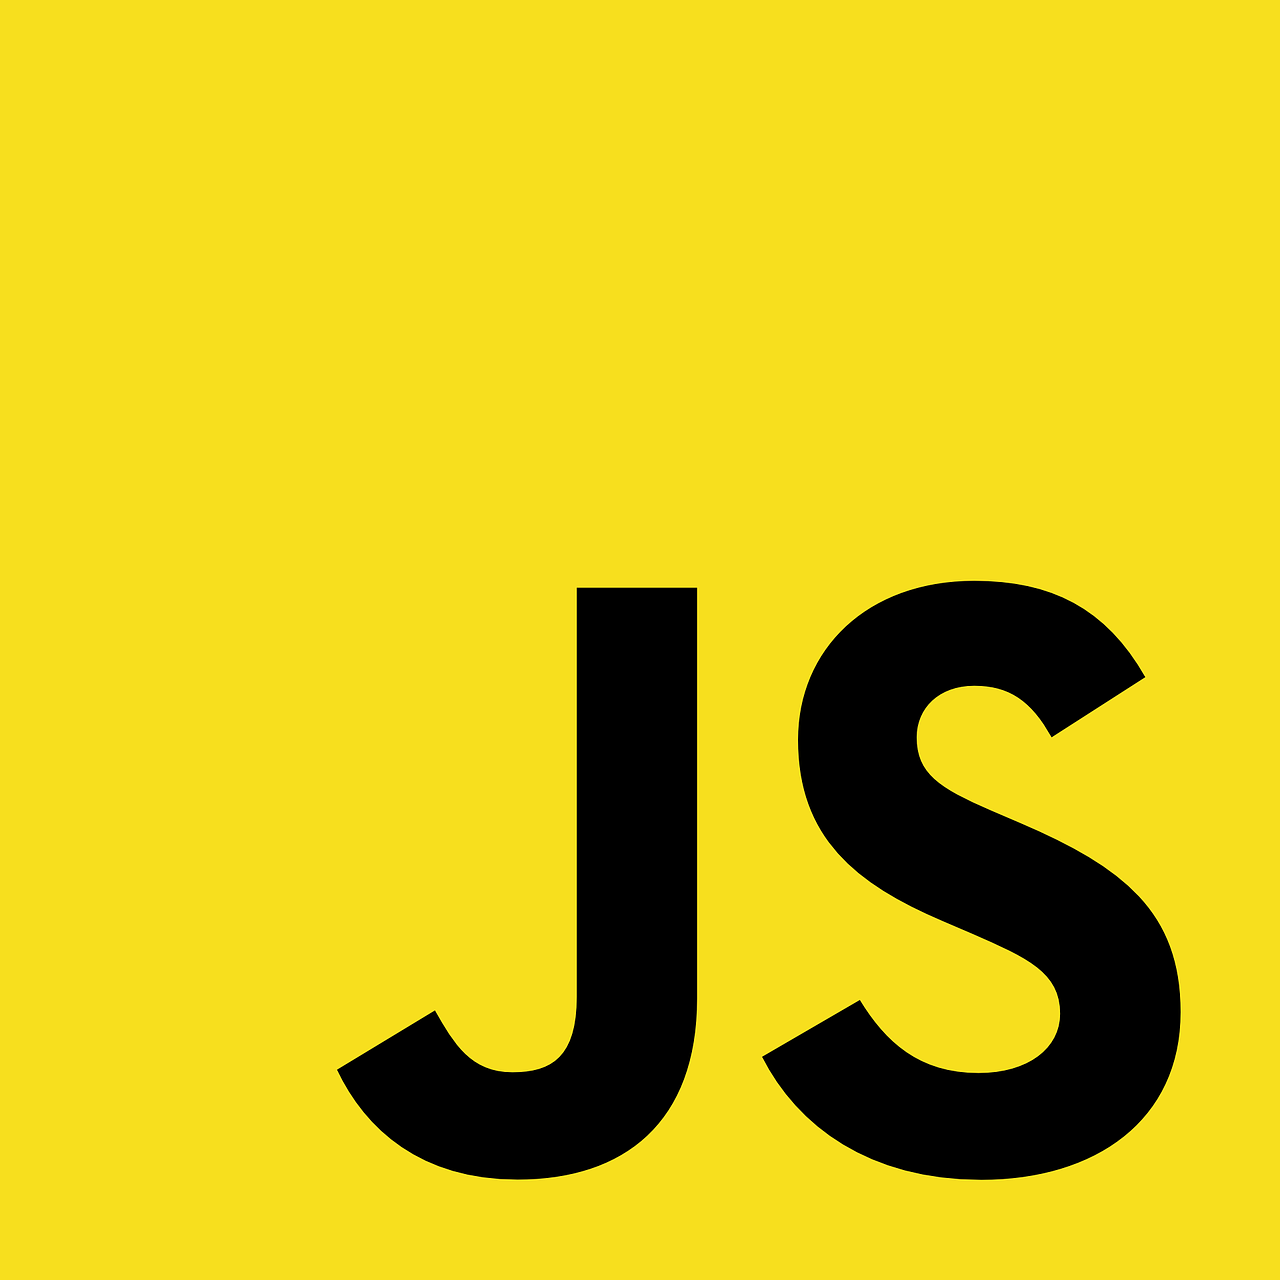 javascript
javascript-nedir
javascript-ne-ise-yarar
